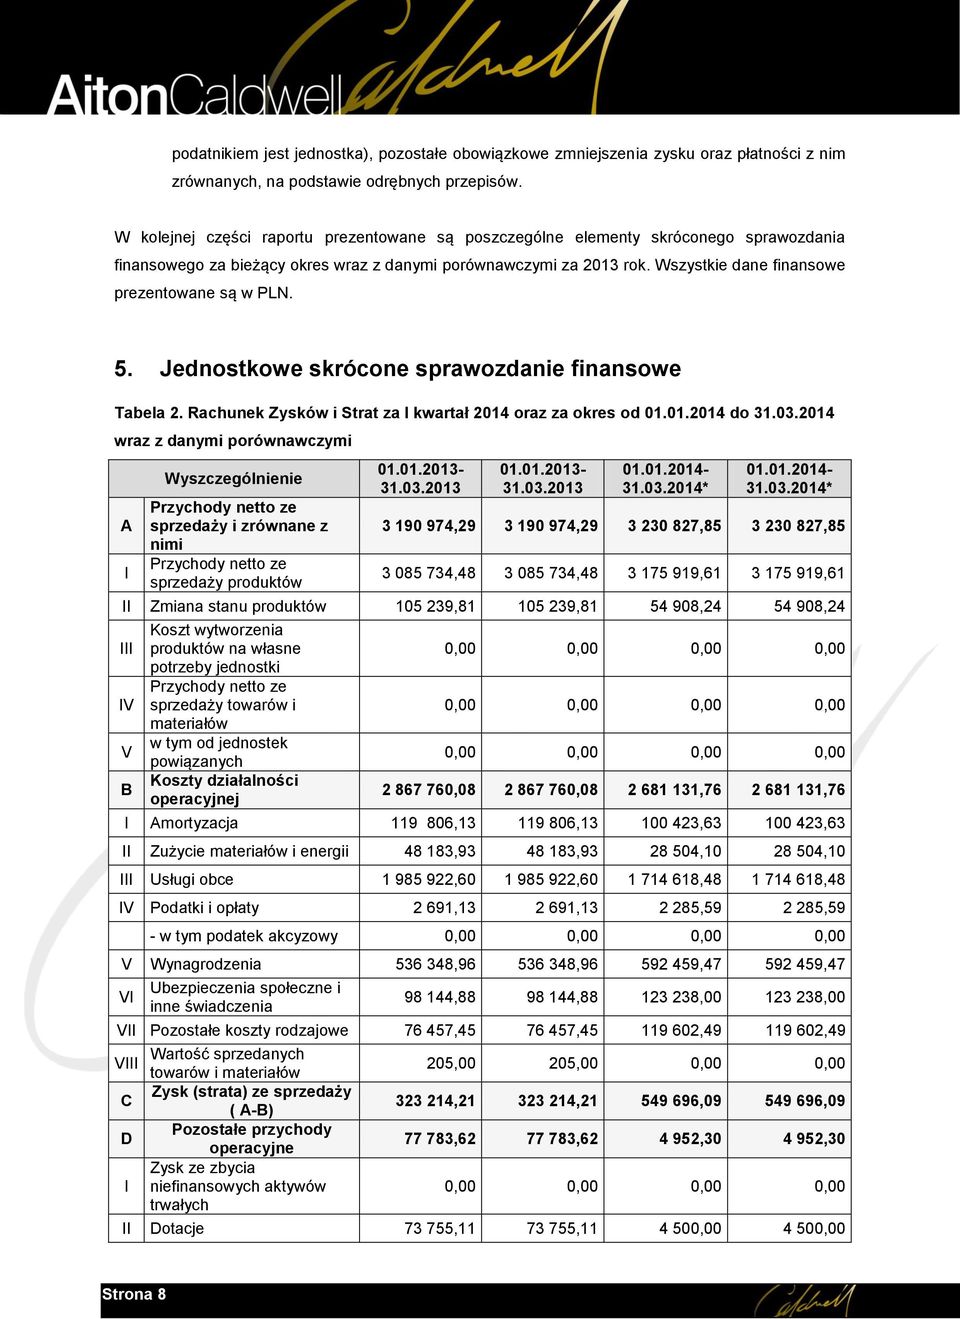 Wszystkie dane finansowe prezentowane są w PLN. 5. Jednostkowe skrócone sprawozdanie finansowe Tabela 2. Rachunek Zysków i Strat za I kwartał 2014 oraz za okres od 01.01.2014 do 31.03.